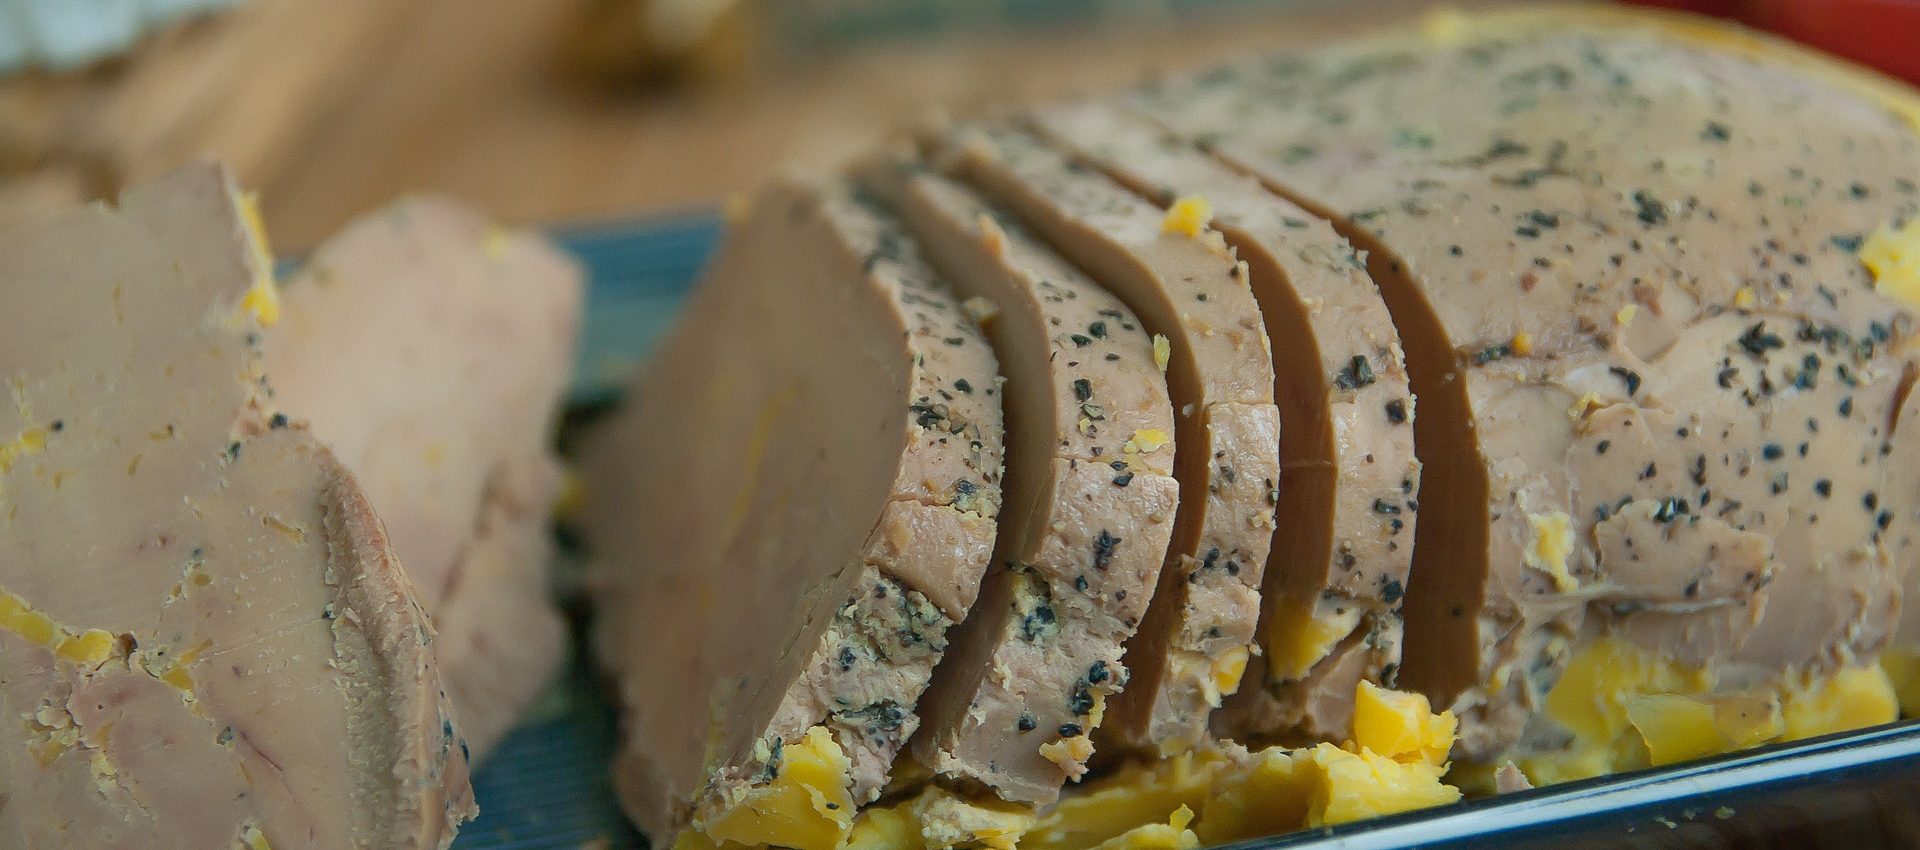 Foie gras au Sauternes au cookeo